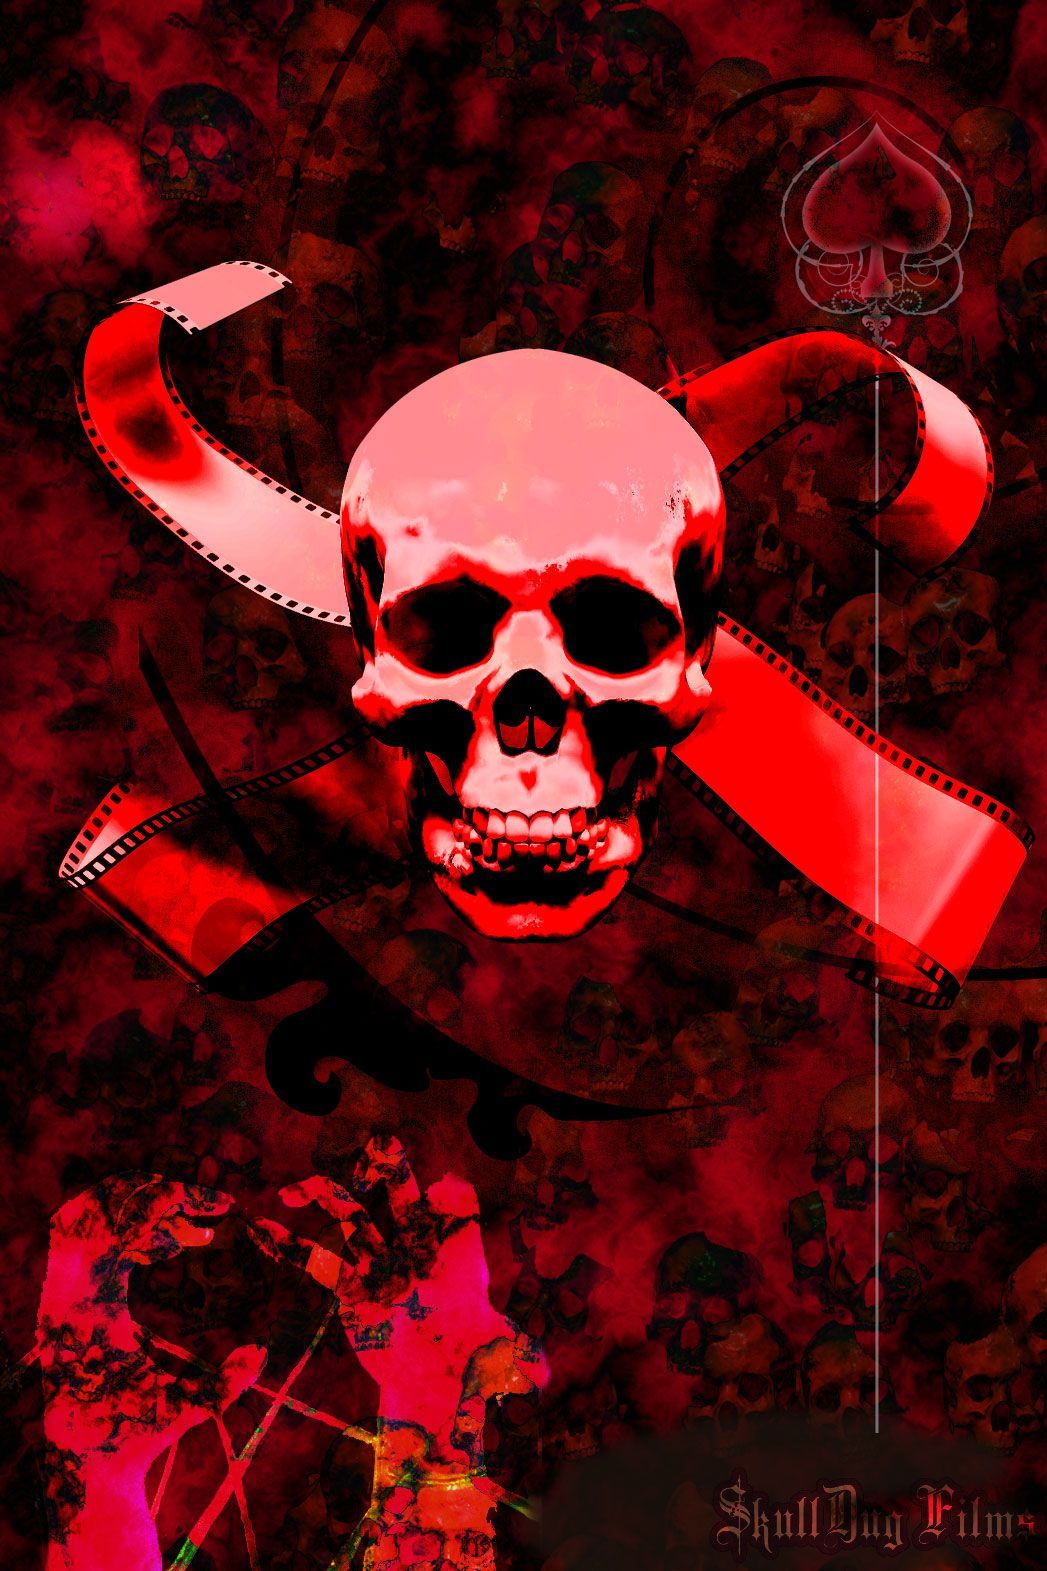 Red Skull Army wallpaper. Skull wallpaper, Red skull, Skull